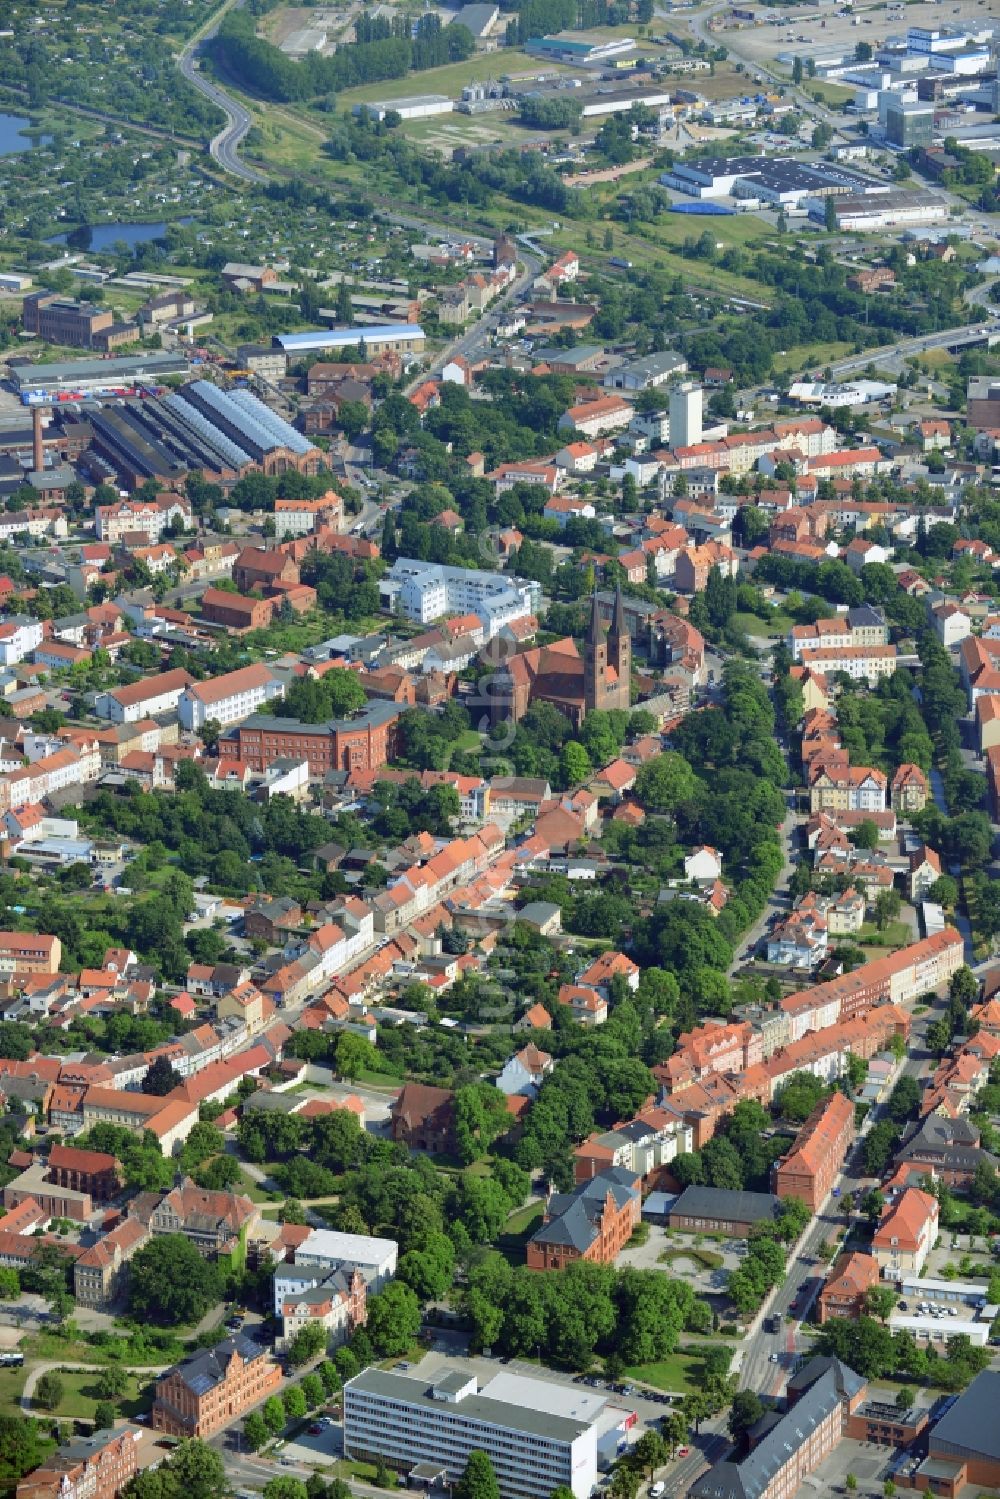 Luftbild Stendal - Stadtansicht der Innenstadt der Hansestadt Stendal im Bundesland Sachsen-Anhalt